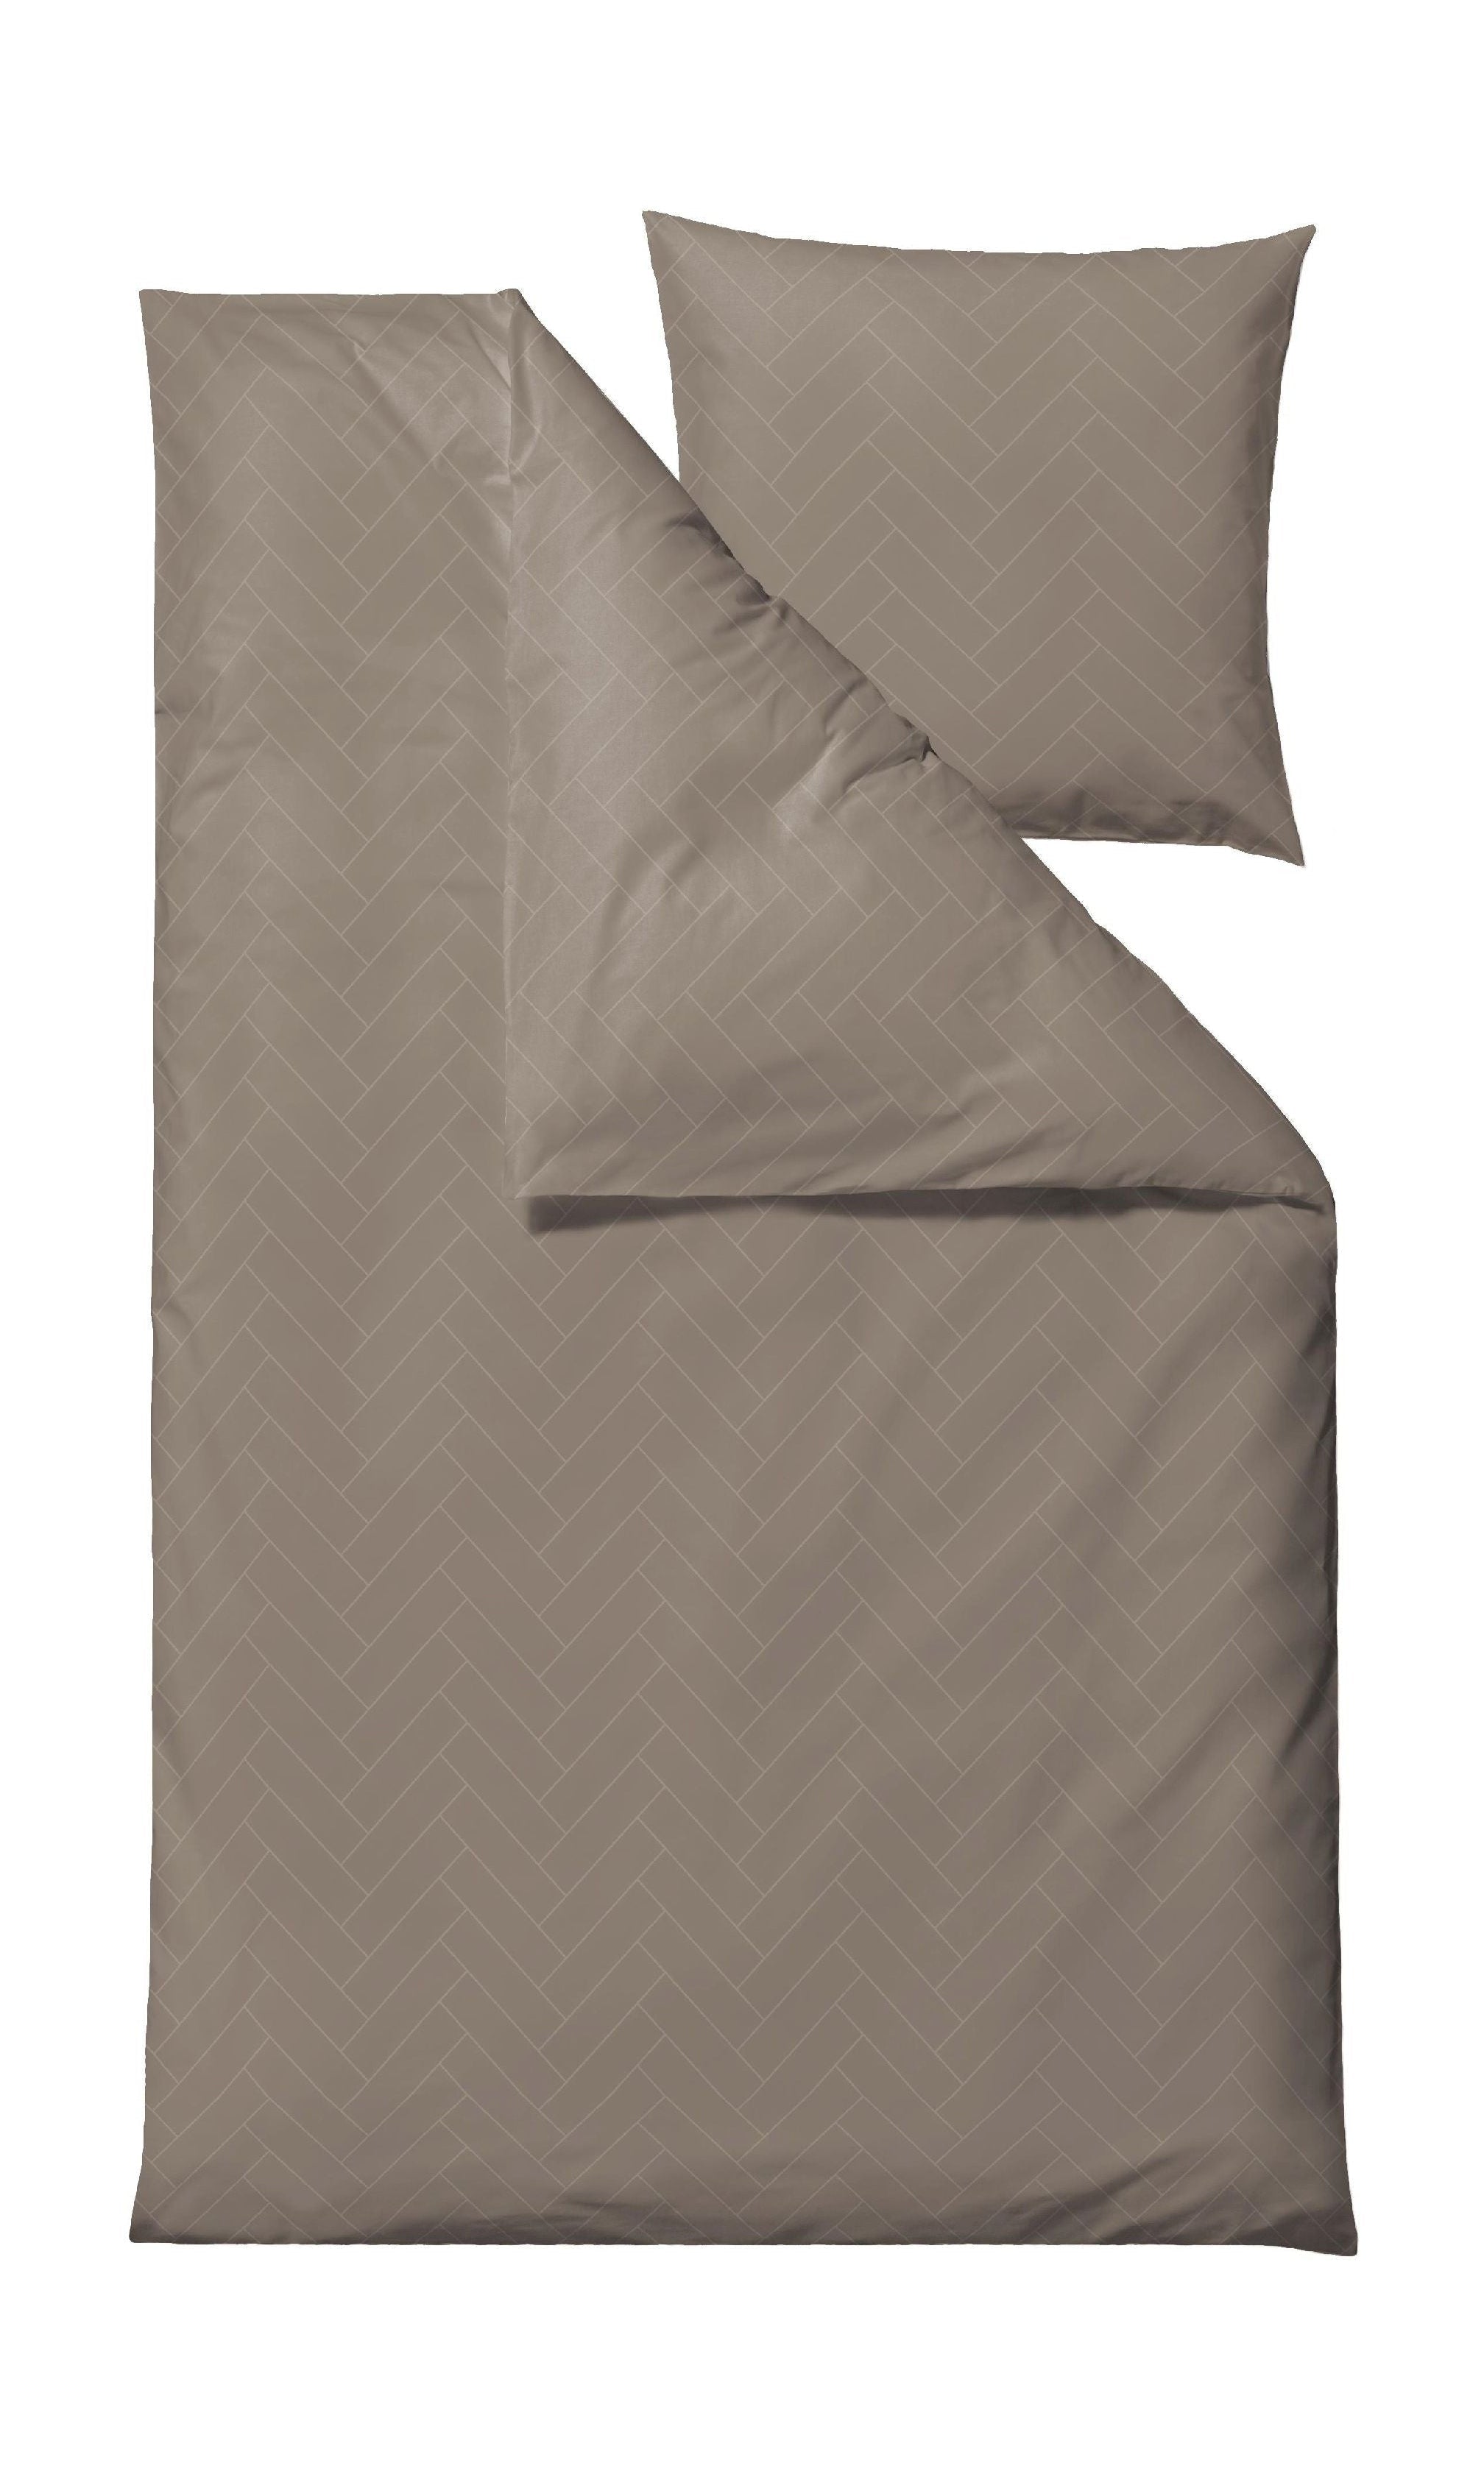 Söstahl brickor sängkläder 140x200 cm, taupe